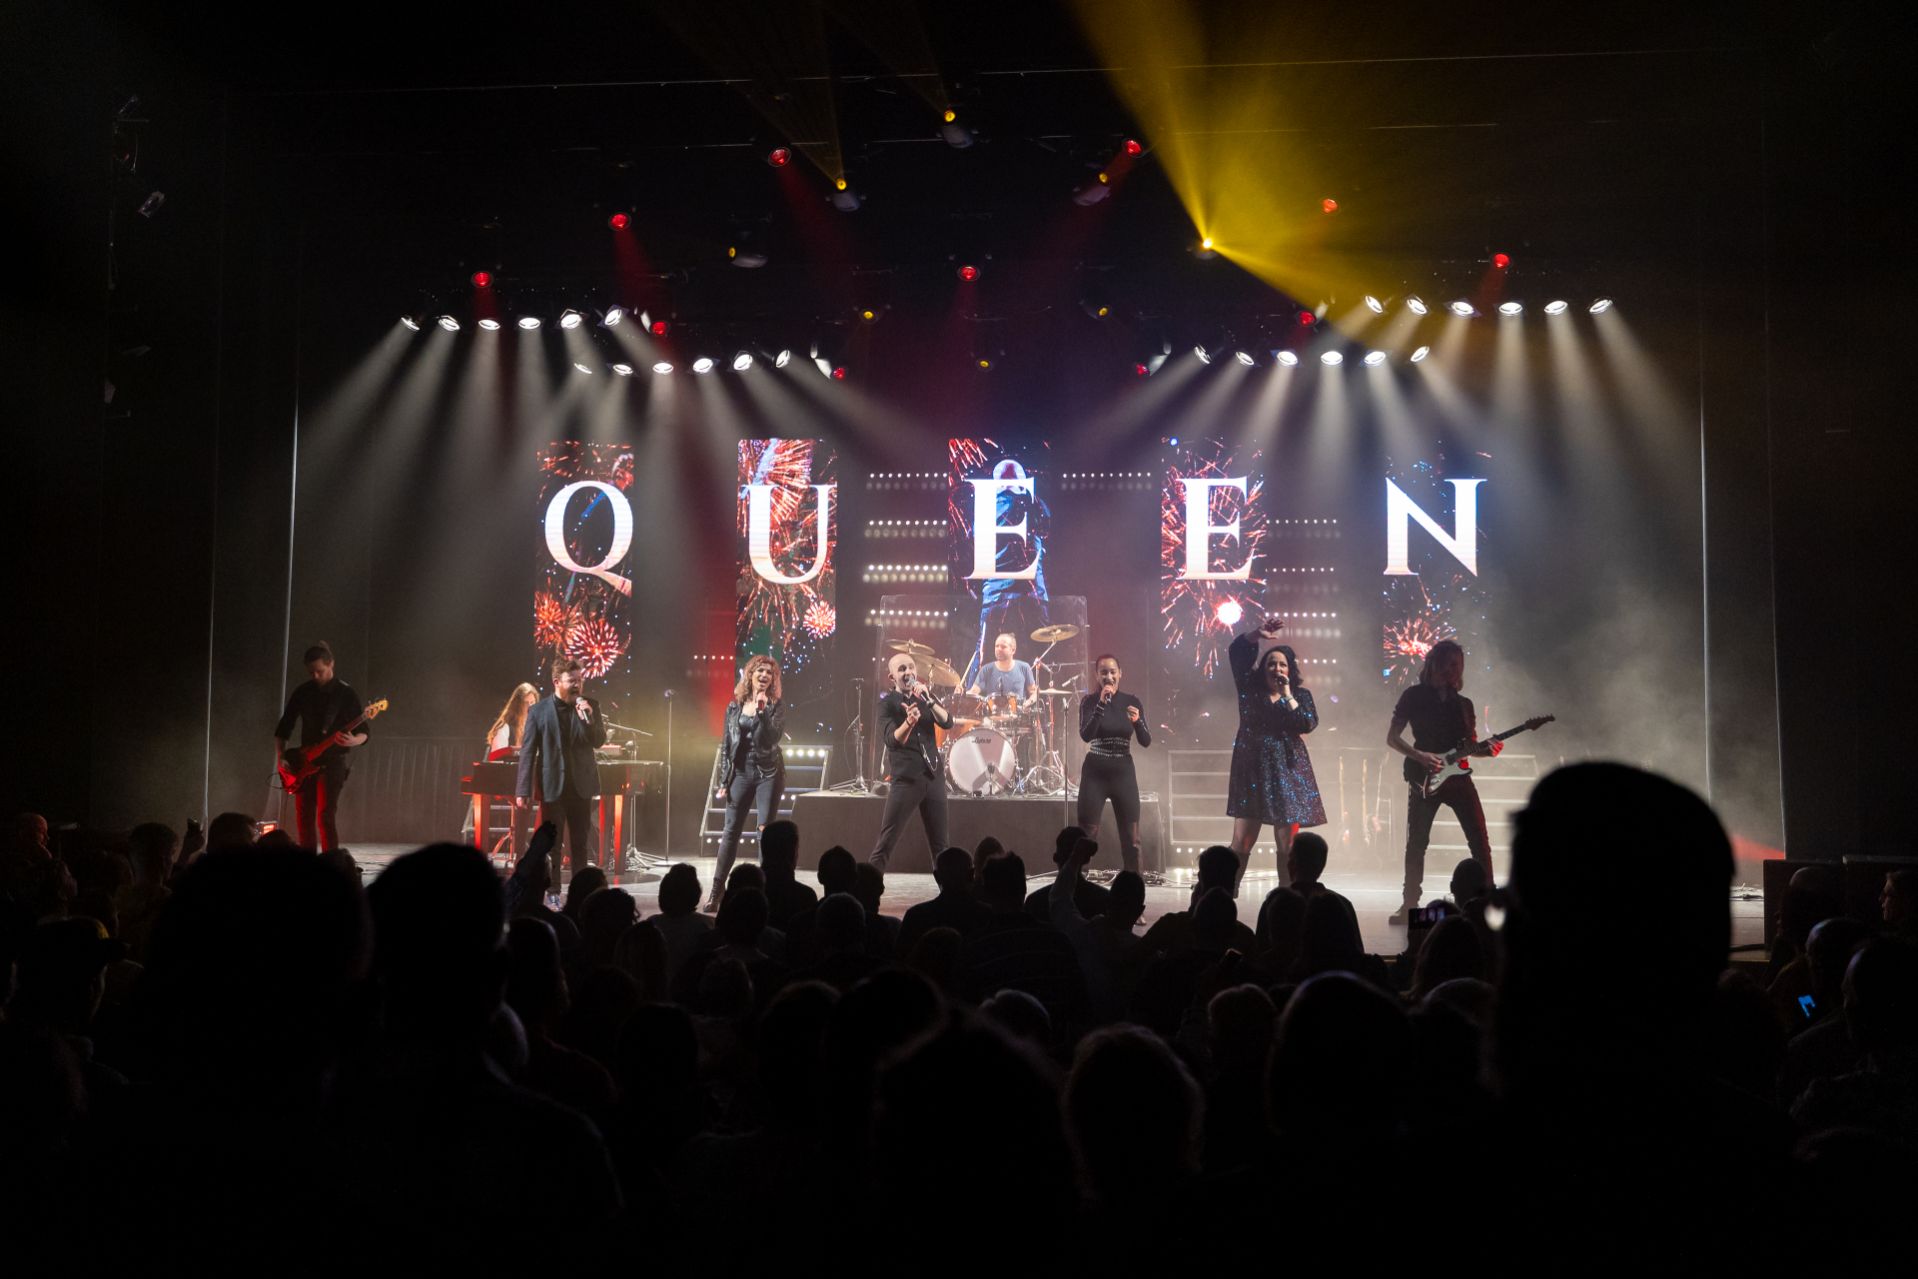 Queen the Music_Stadsgehoorzaal Kampen